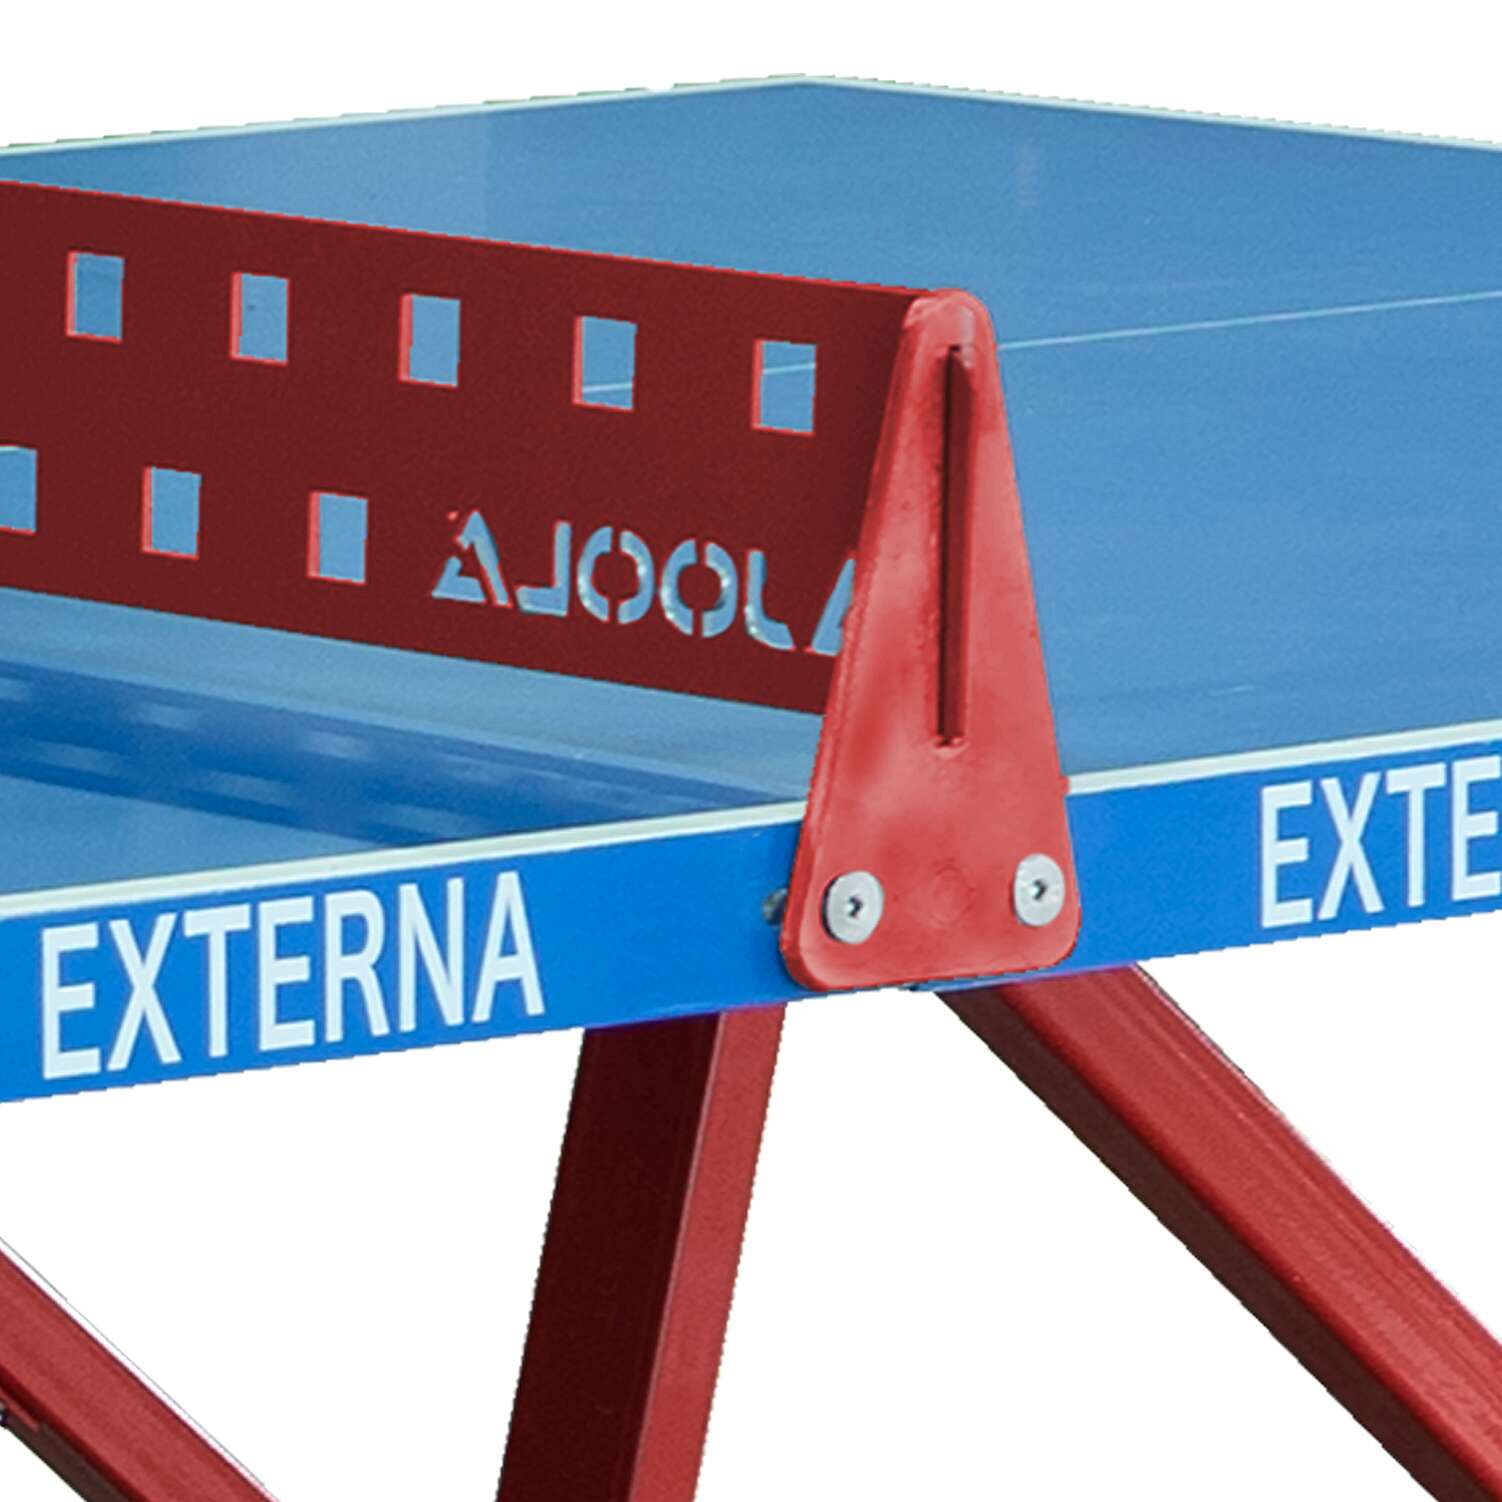 Joola Tischtennisnetz "Externa" von Joola